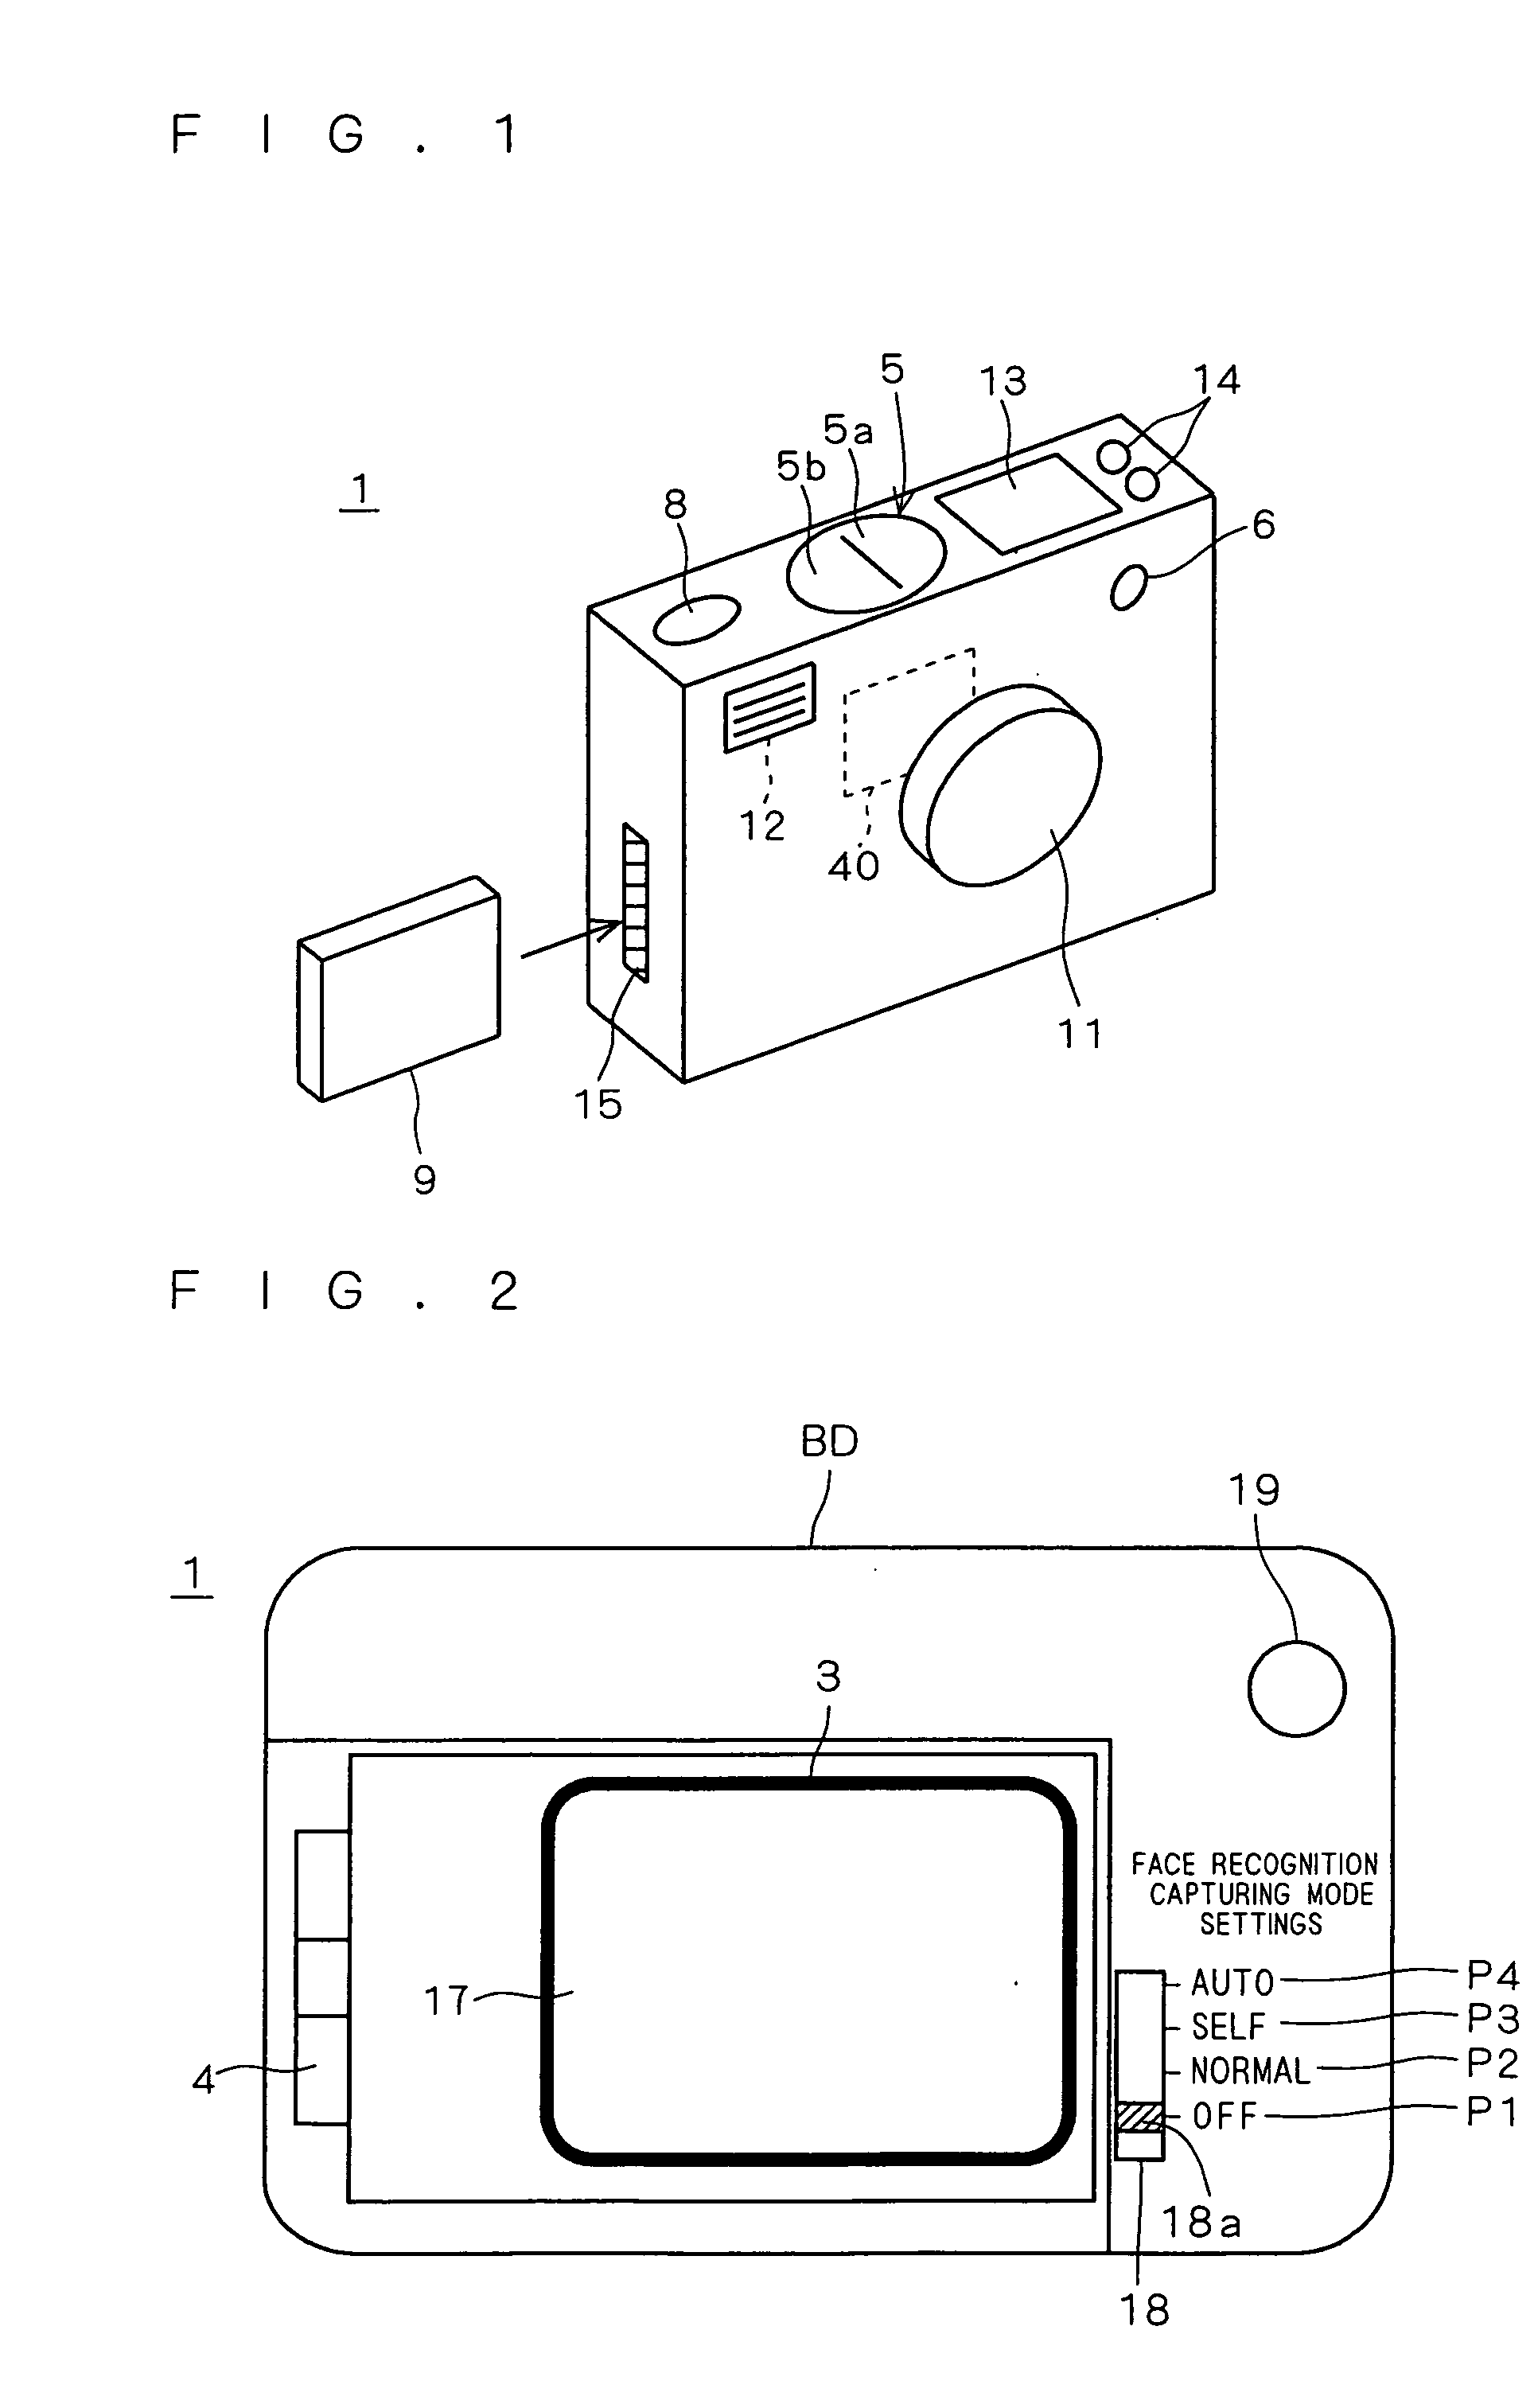 Image capturing apparatus